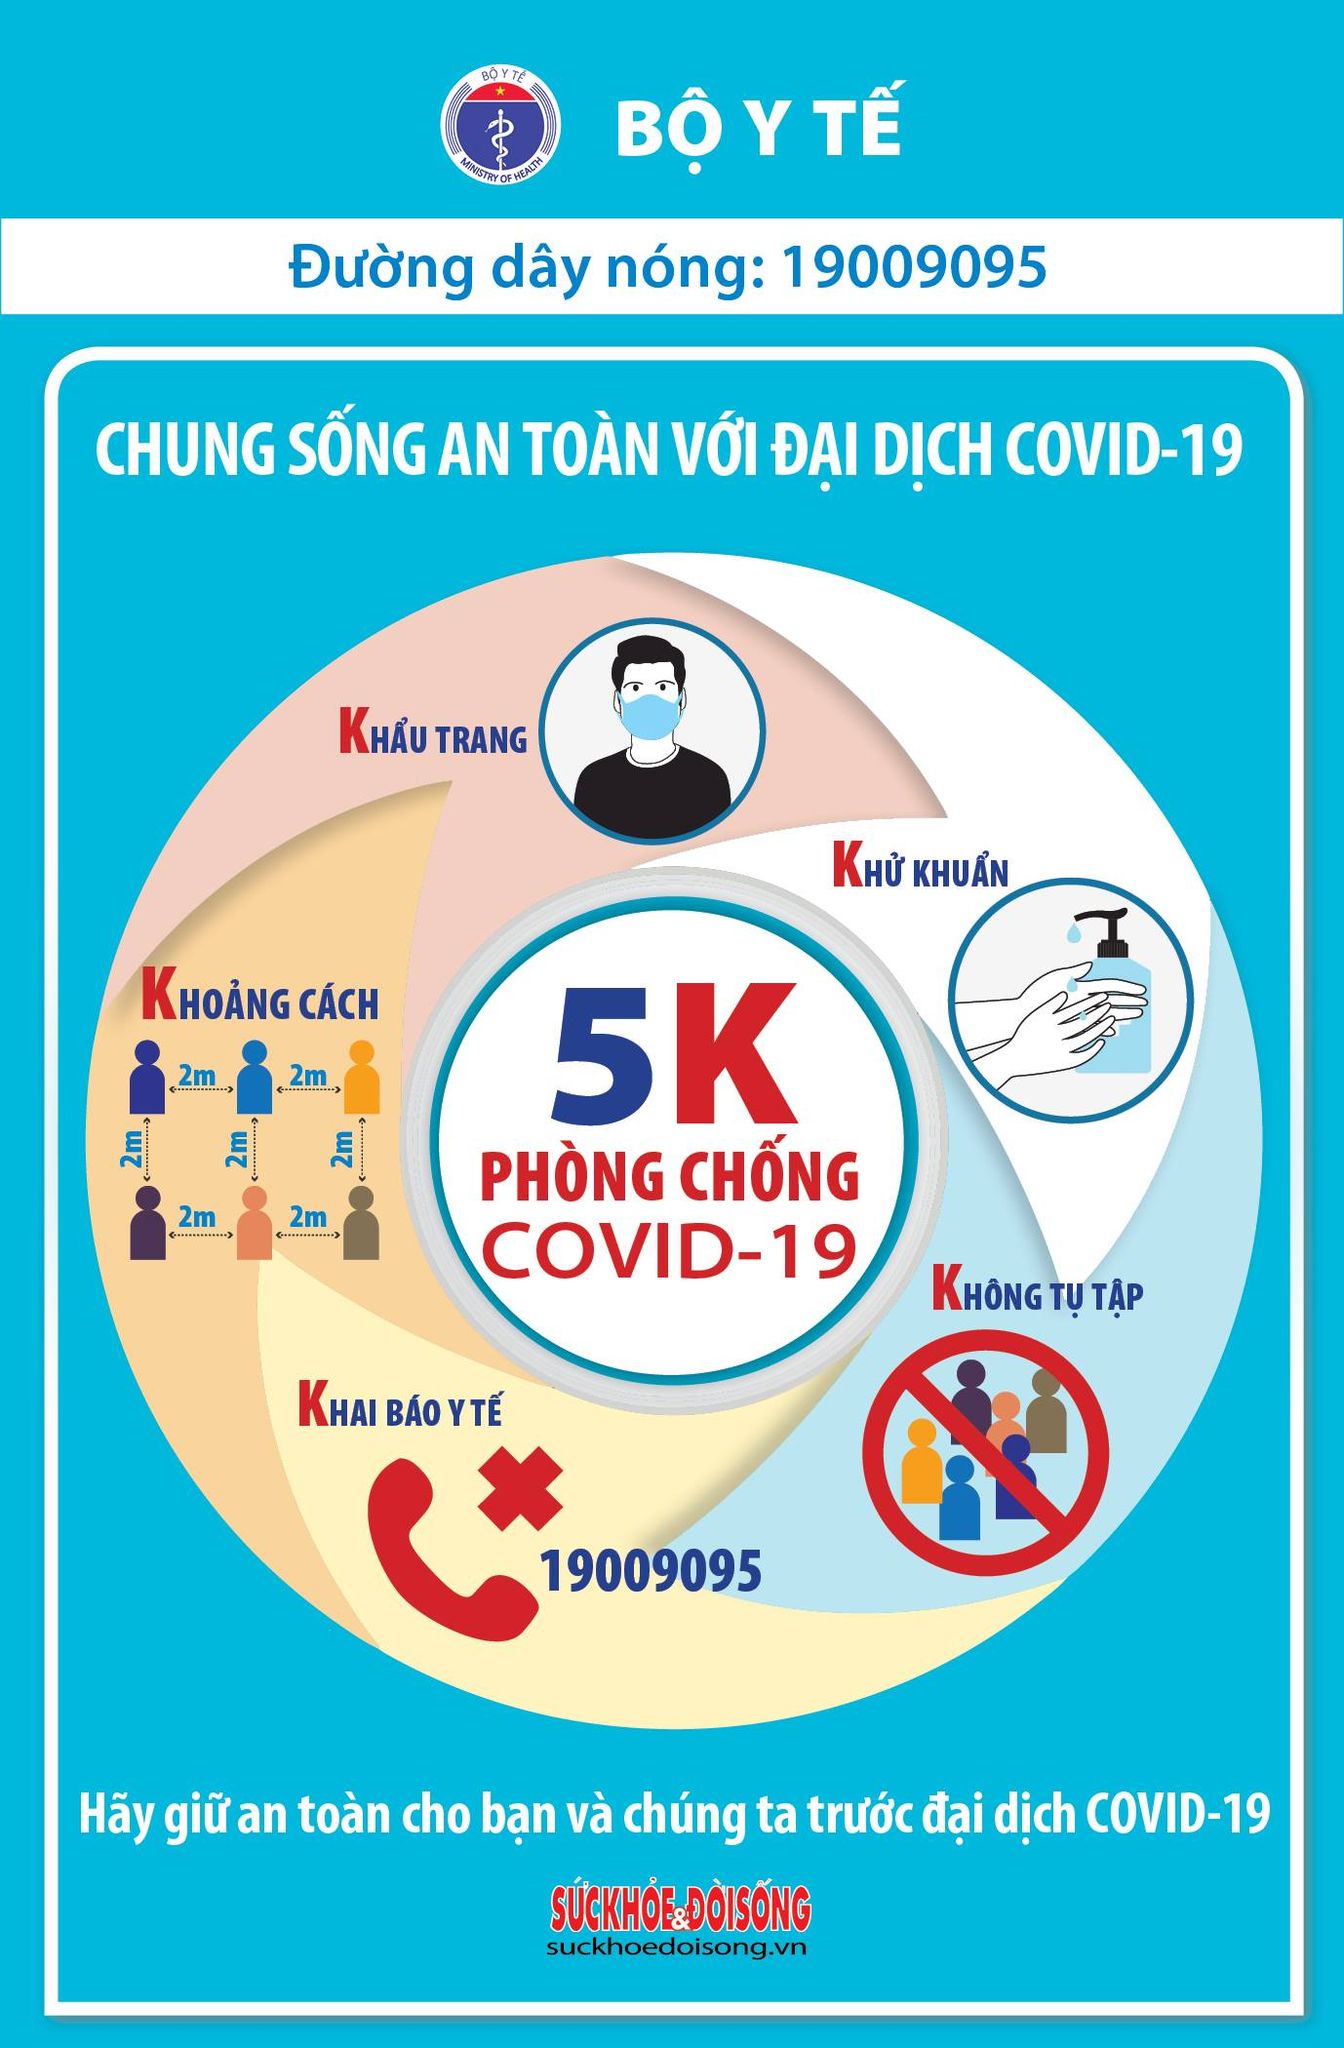 Sáng 26/2, thêm 1 ca mắc COVID-19 Tây Ninh, Việt Nam có 2.421 bệnh nhân - Ảnh 2.